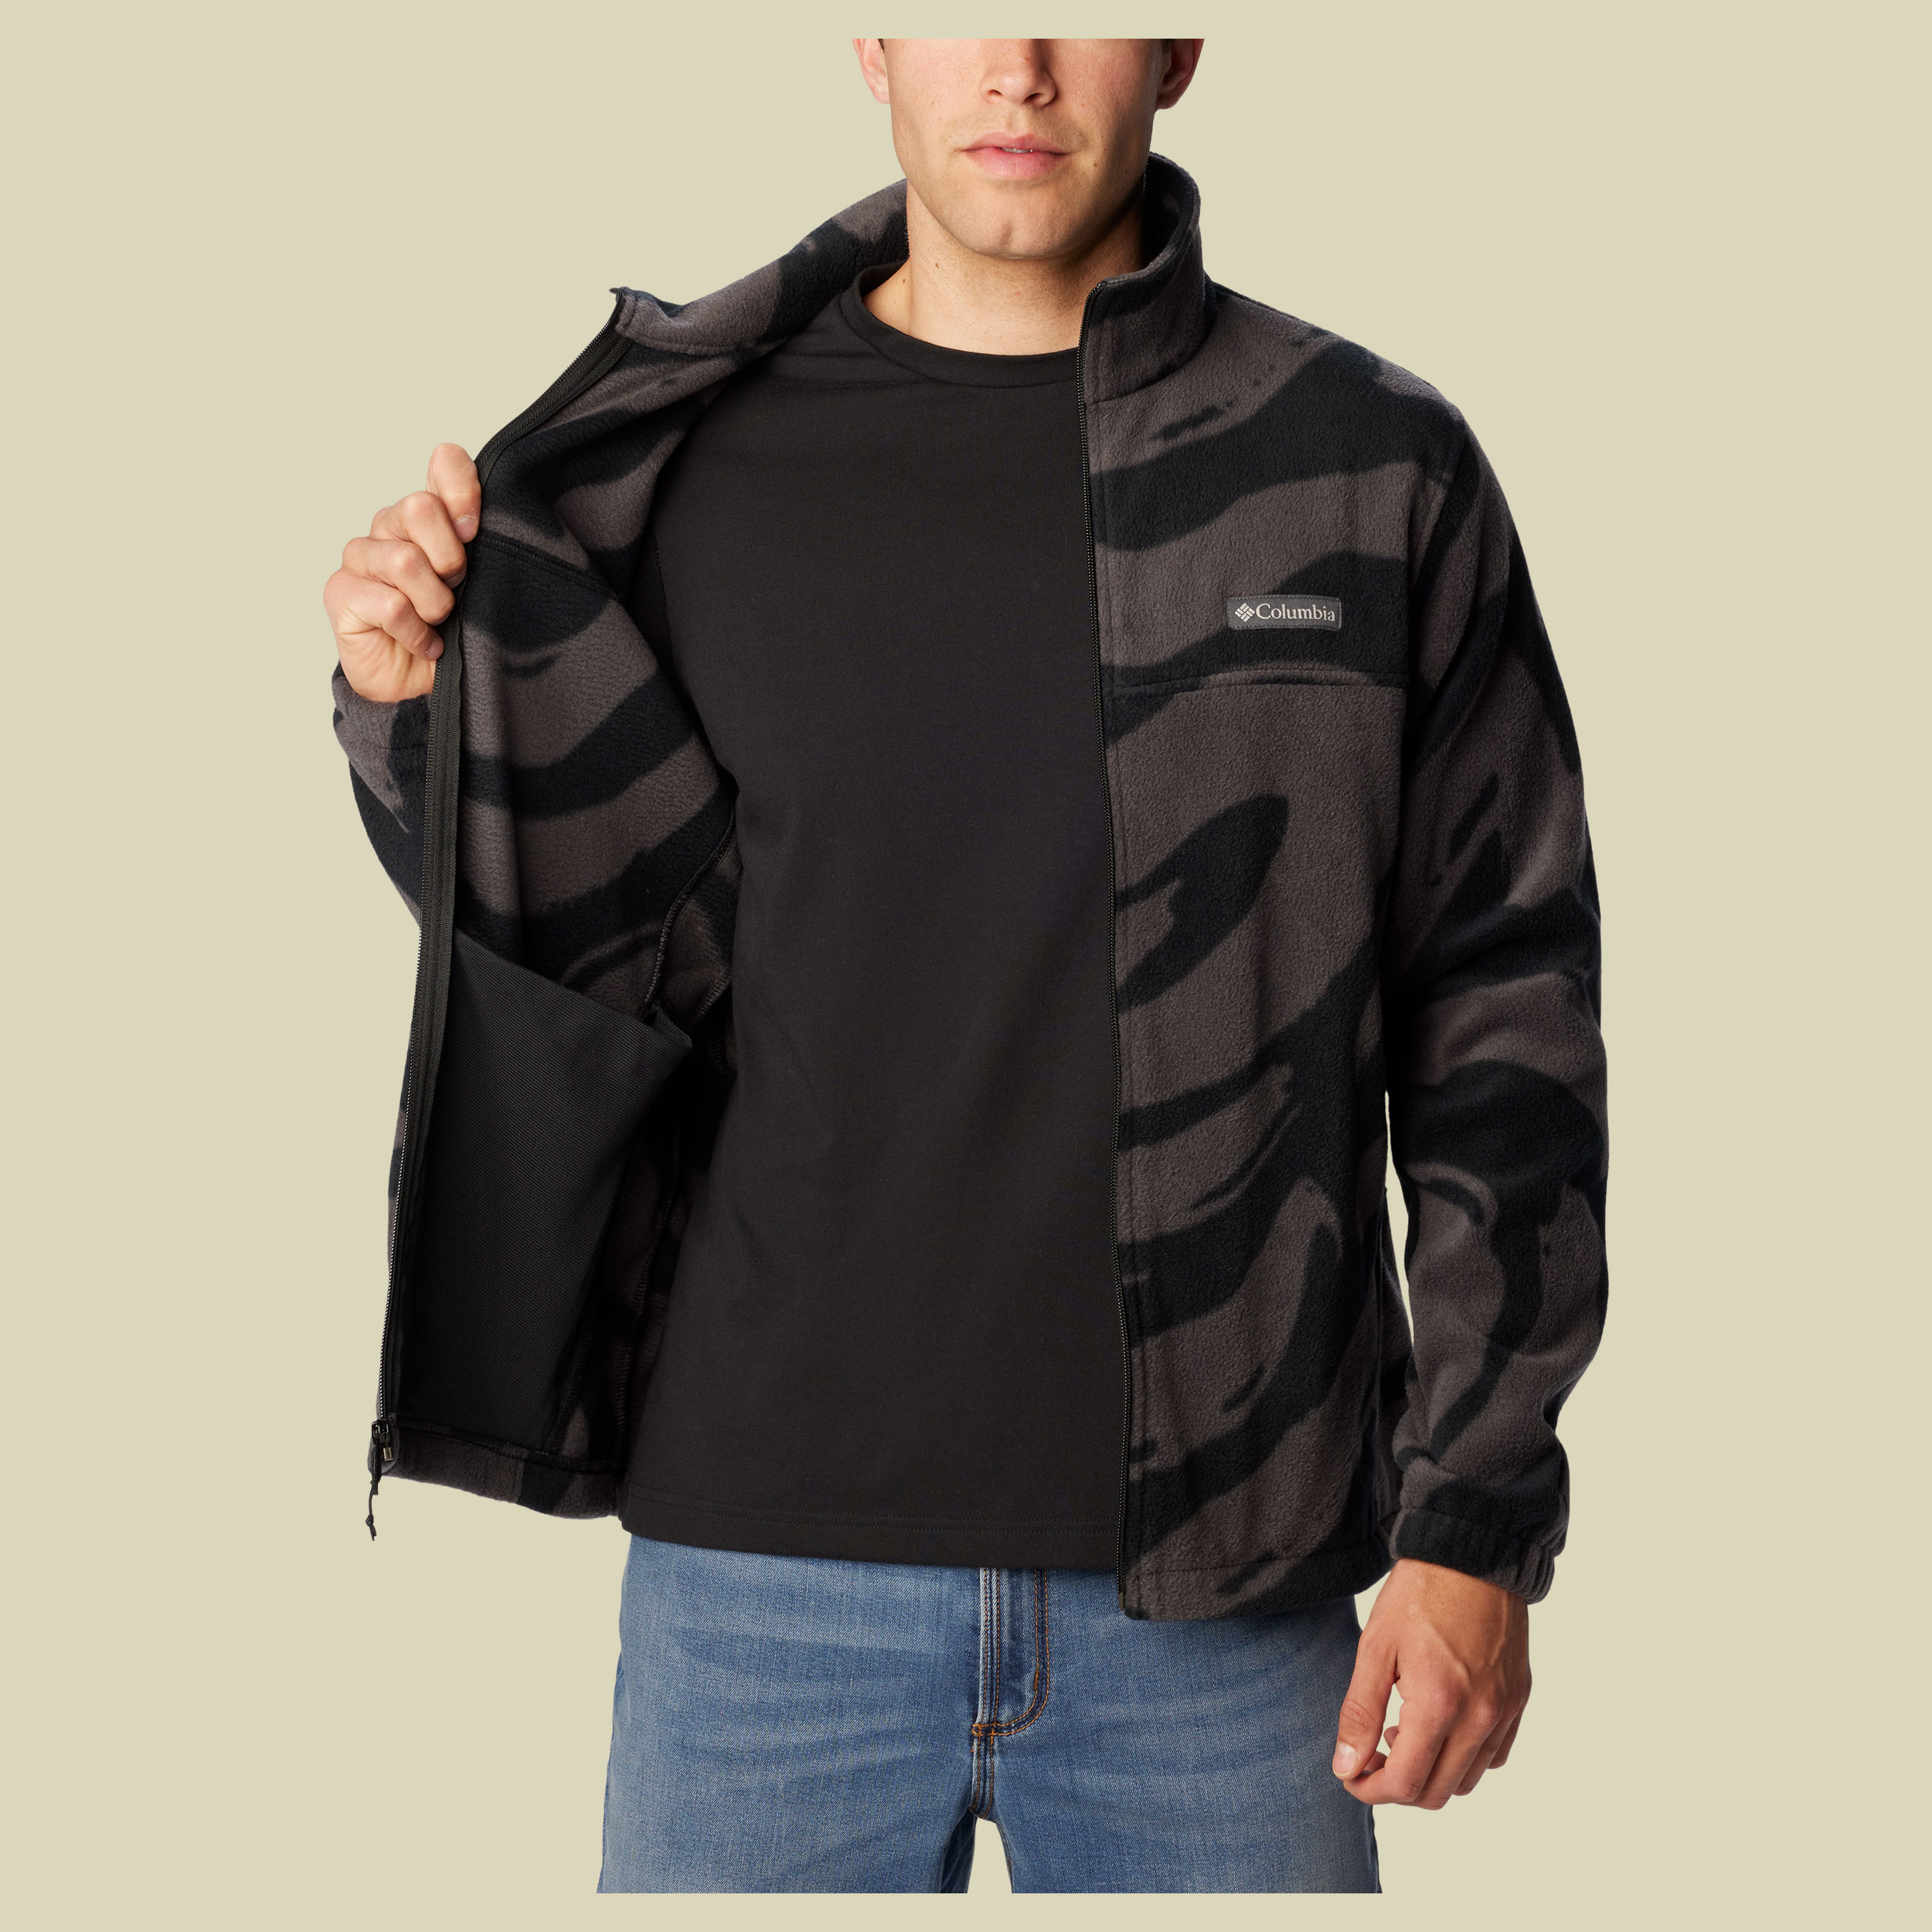 Steens Mountain Printed Jacket Men Größe S Farbe black snowdrift